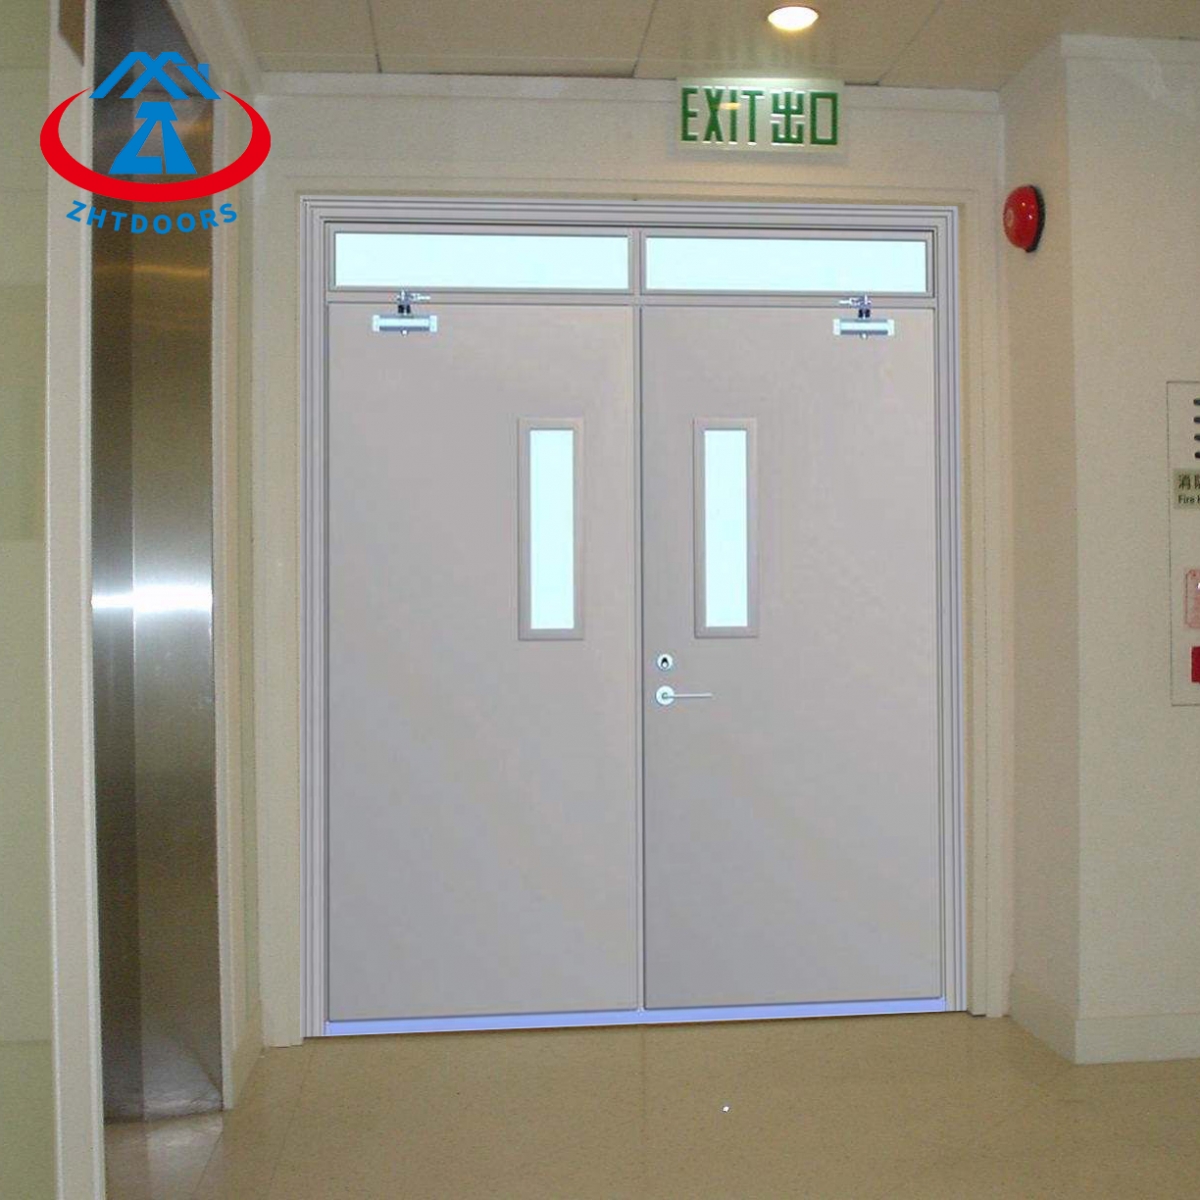 Emergency Doors Fire Resistant-ZTFIRE Door- Fire Door,Fireproof Door,Fire rated Door,Fire Resistant Door,Steel Door,Metal Door,Exit Door